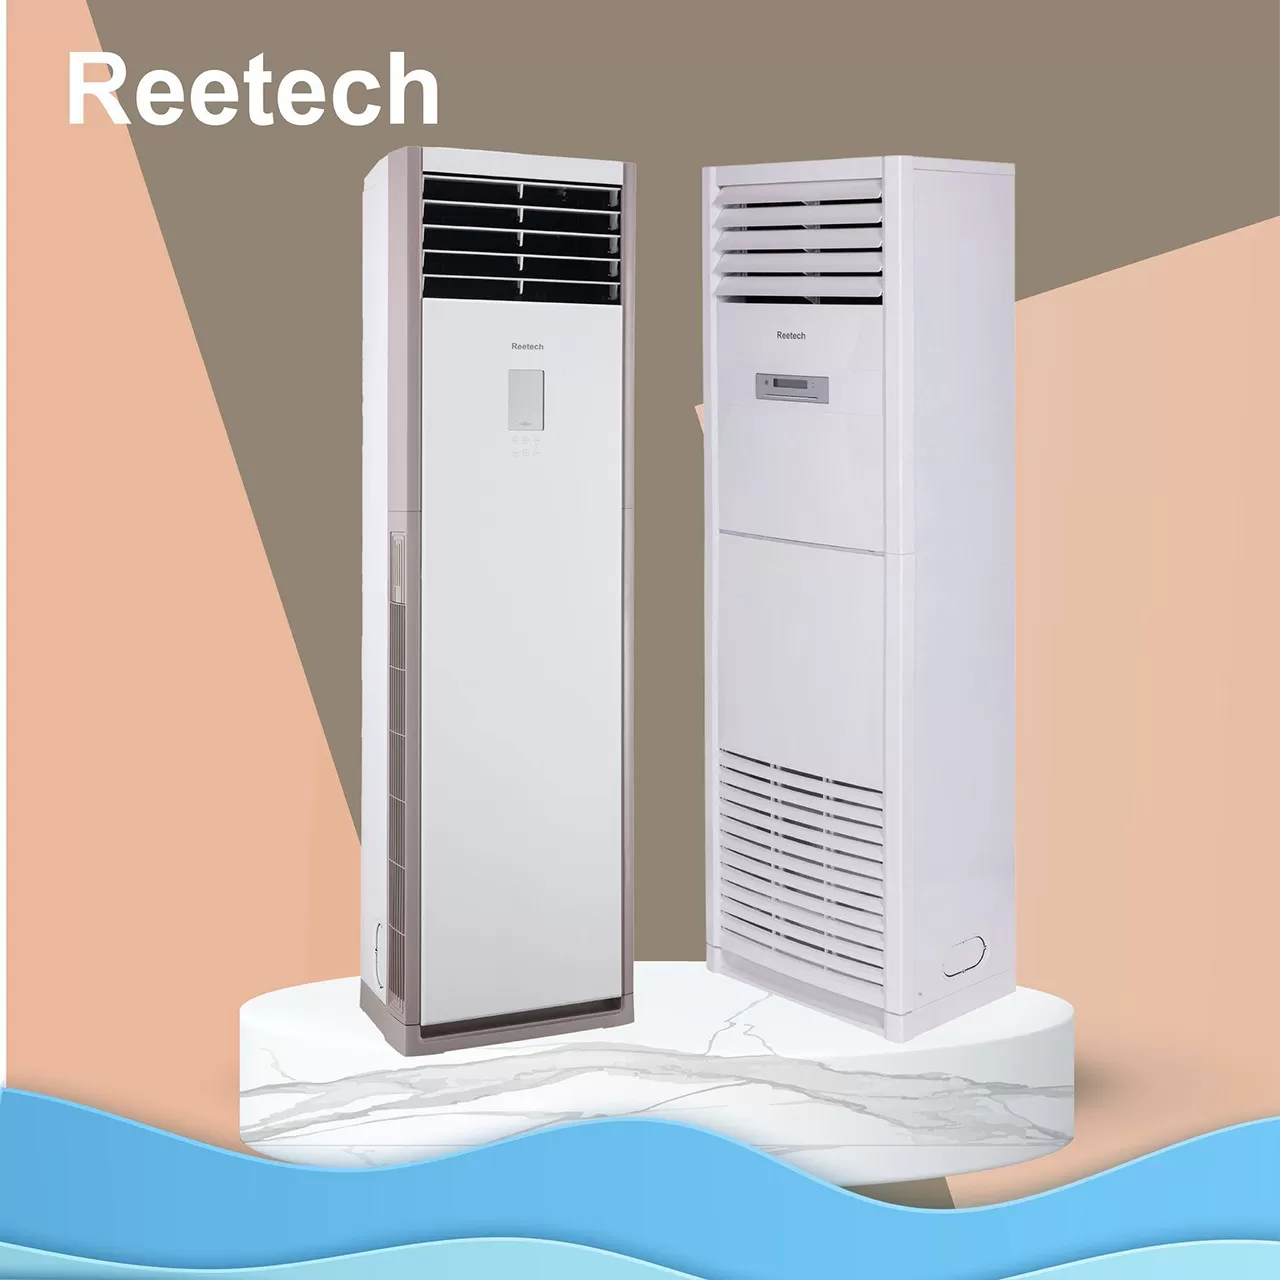 Mát lạnh ngày hè cùng máy lạnh tủ đứng Reetech